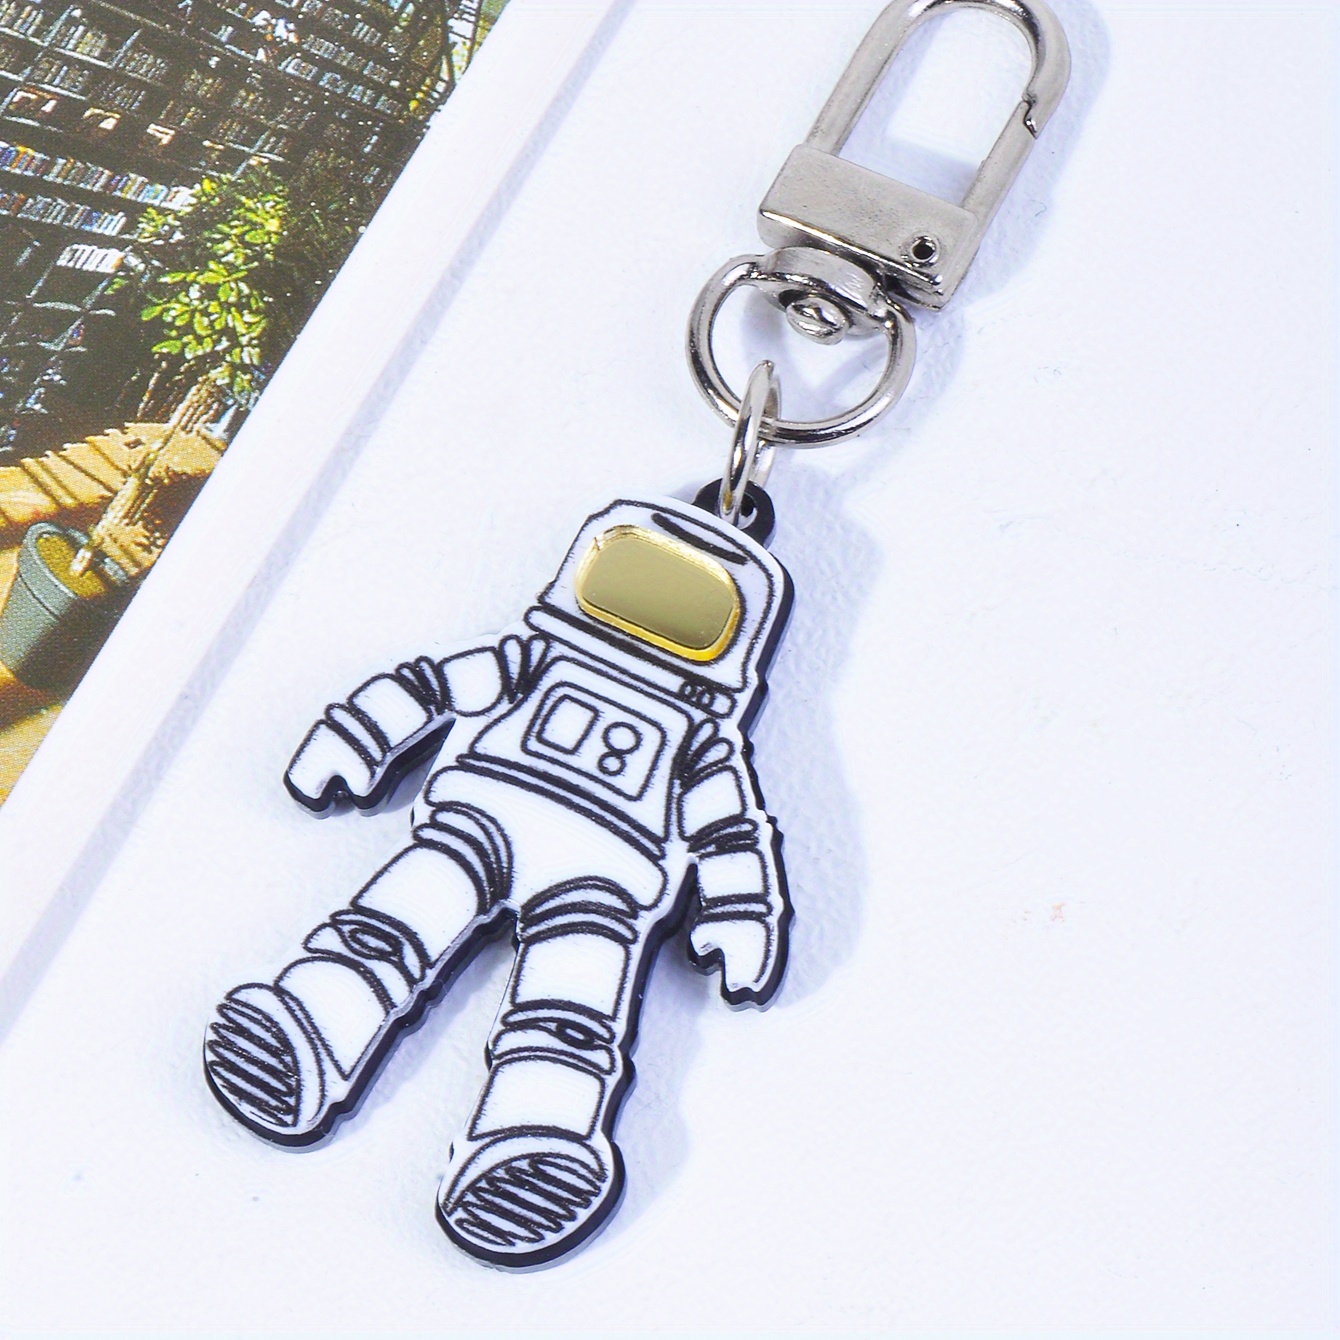 Resin Alien Shape Keychain Fashion Cute Cartoon Colorful Bag Key Chain  Ornament Bag Purse Charm Accessories - Temu Bahrain